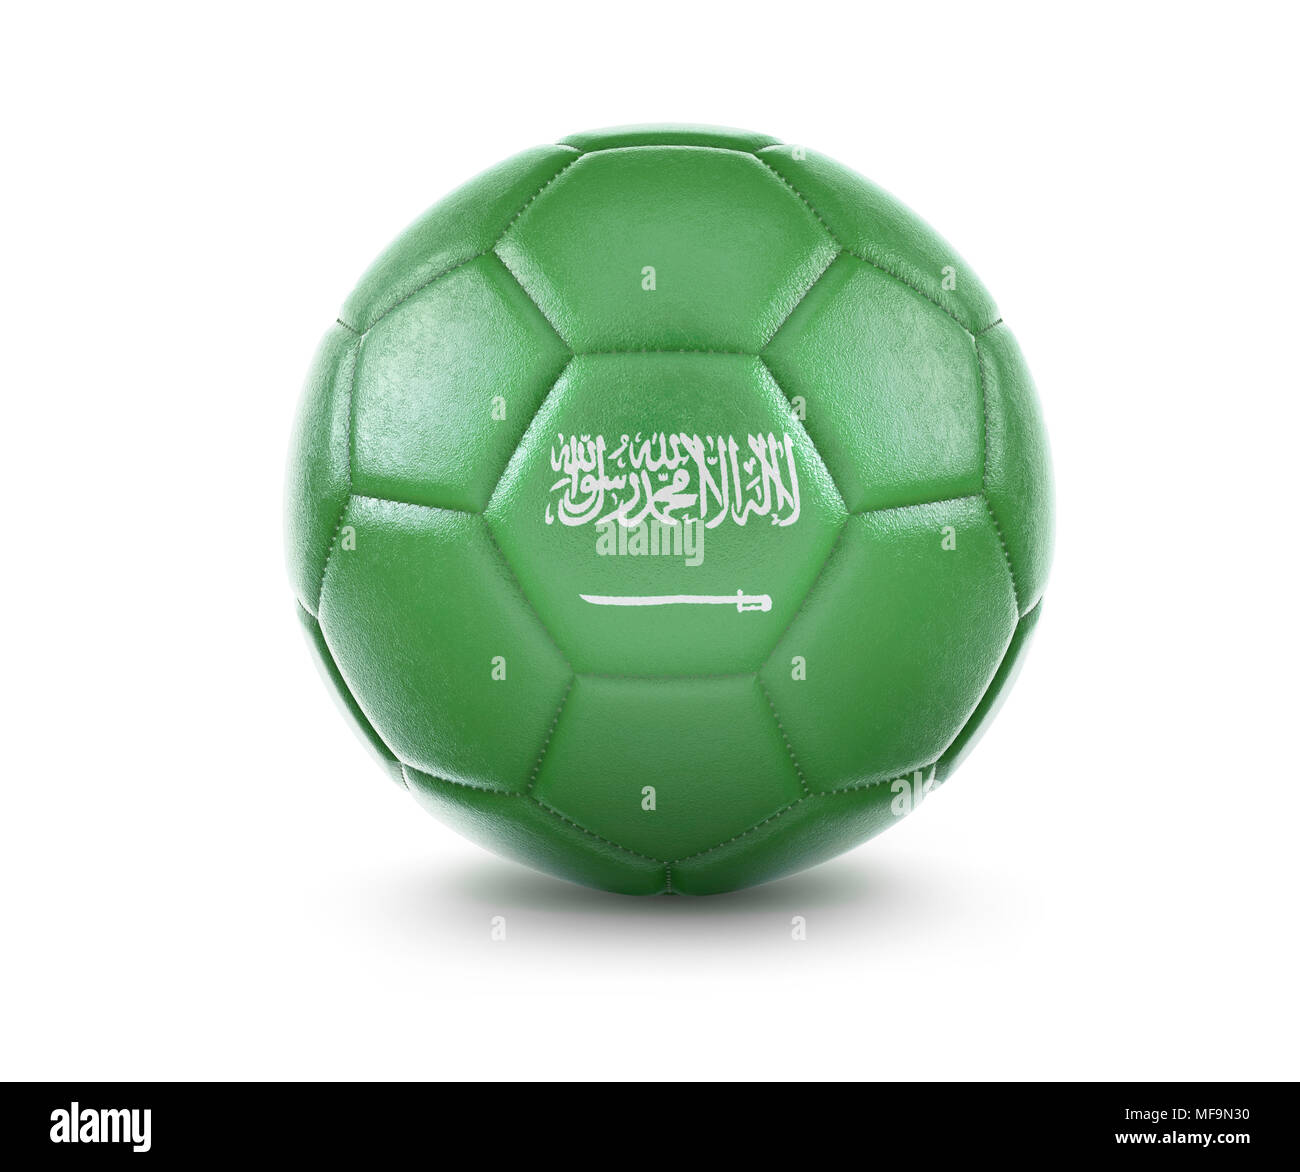 Arabia Saudí ficha 'Balones de Oro' para convertirse en la 'Meca' del  fútbol y redorar su imagen